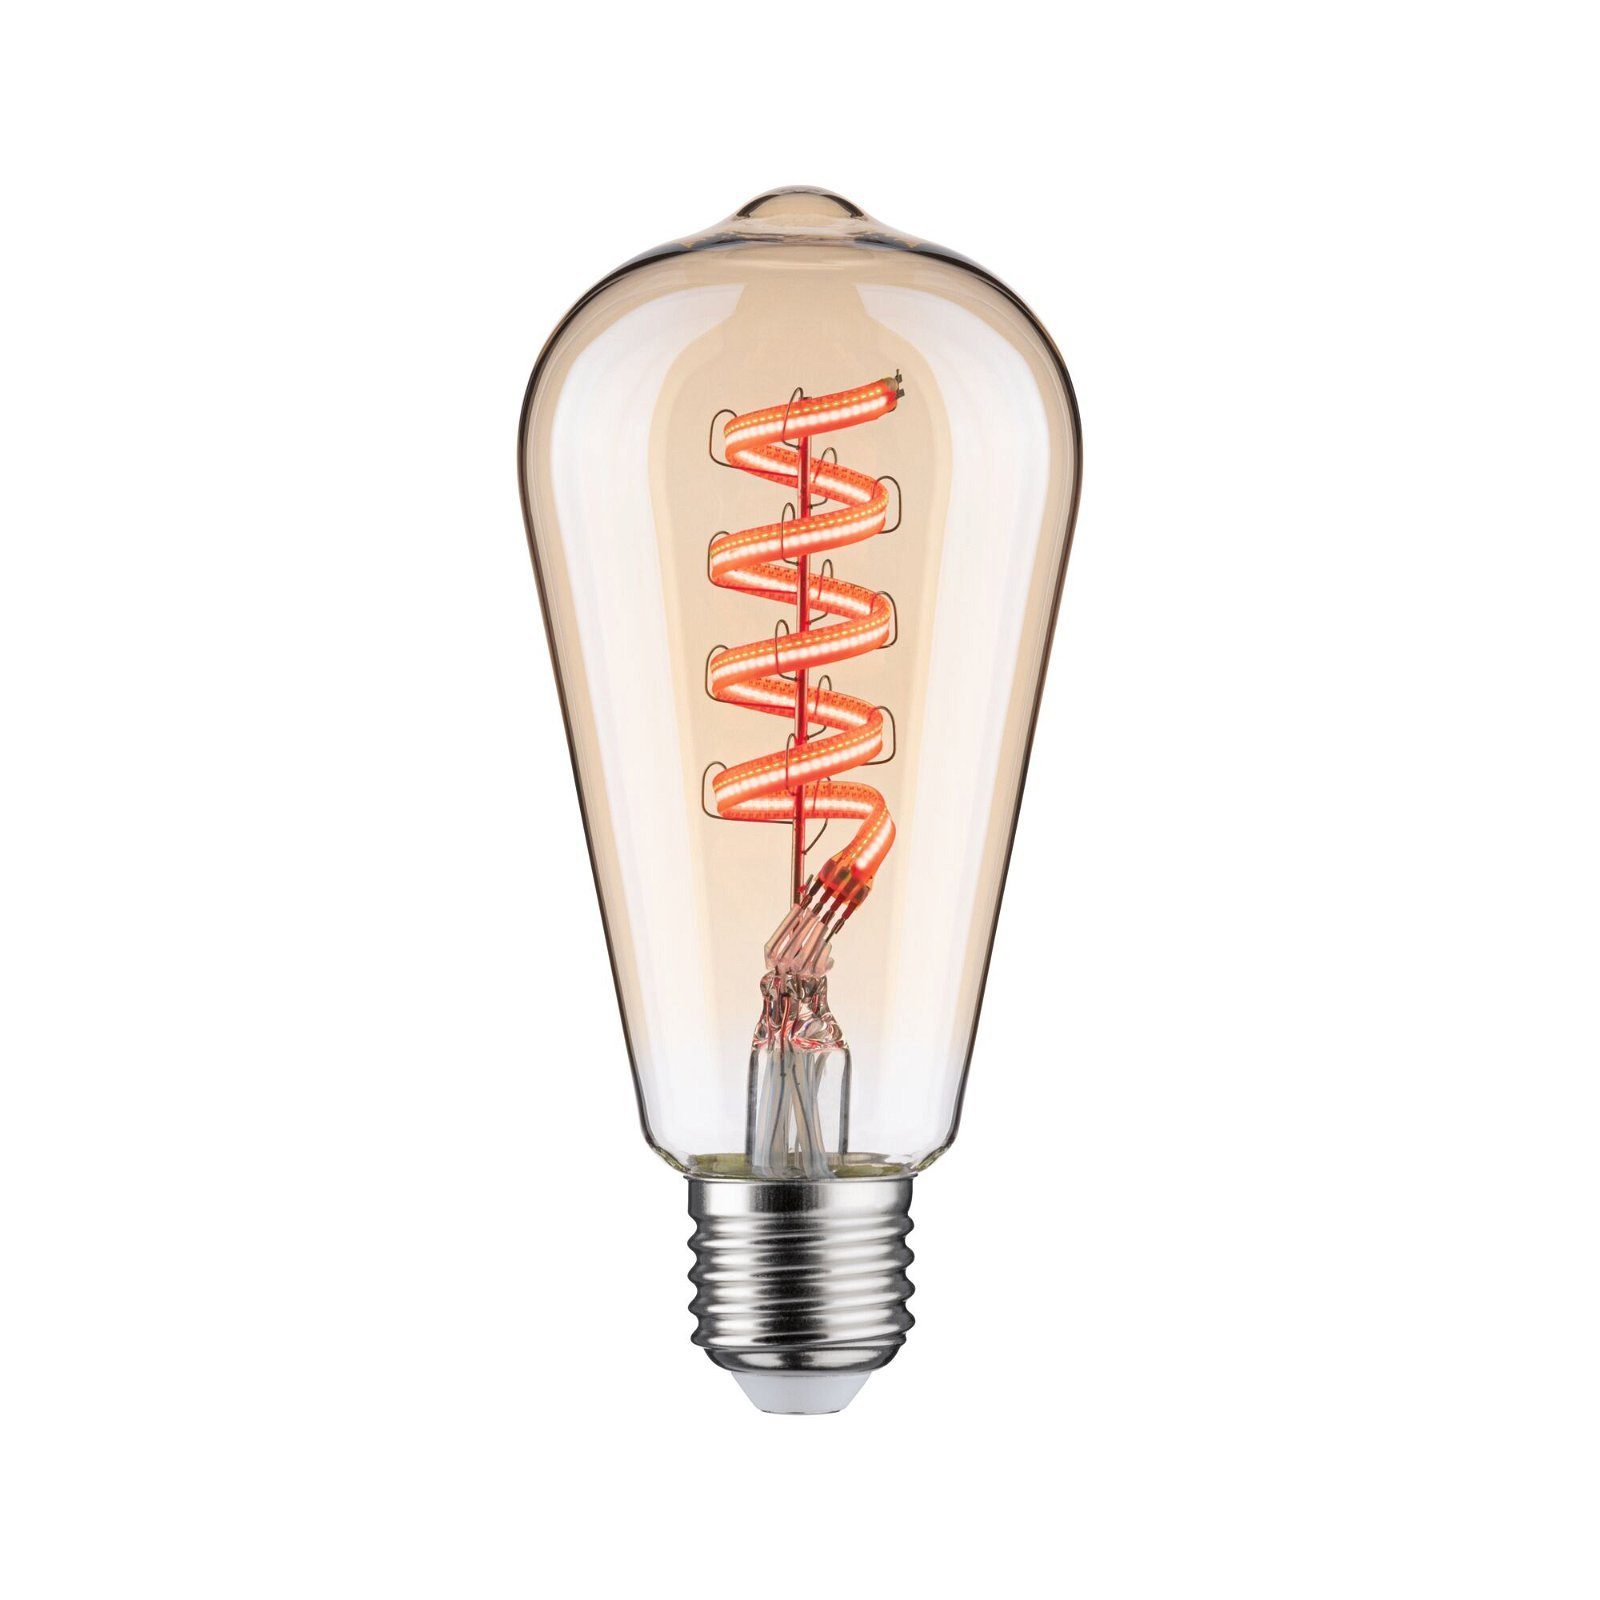 Filament Tageslichtweiß 470lm 230V, gold 1 ST64 Smart LED-Leuchtmittel 2200K-6500K Paulmann St.,